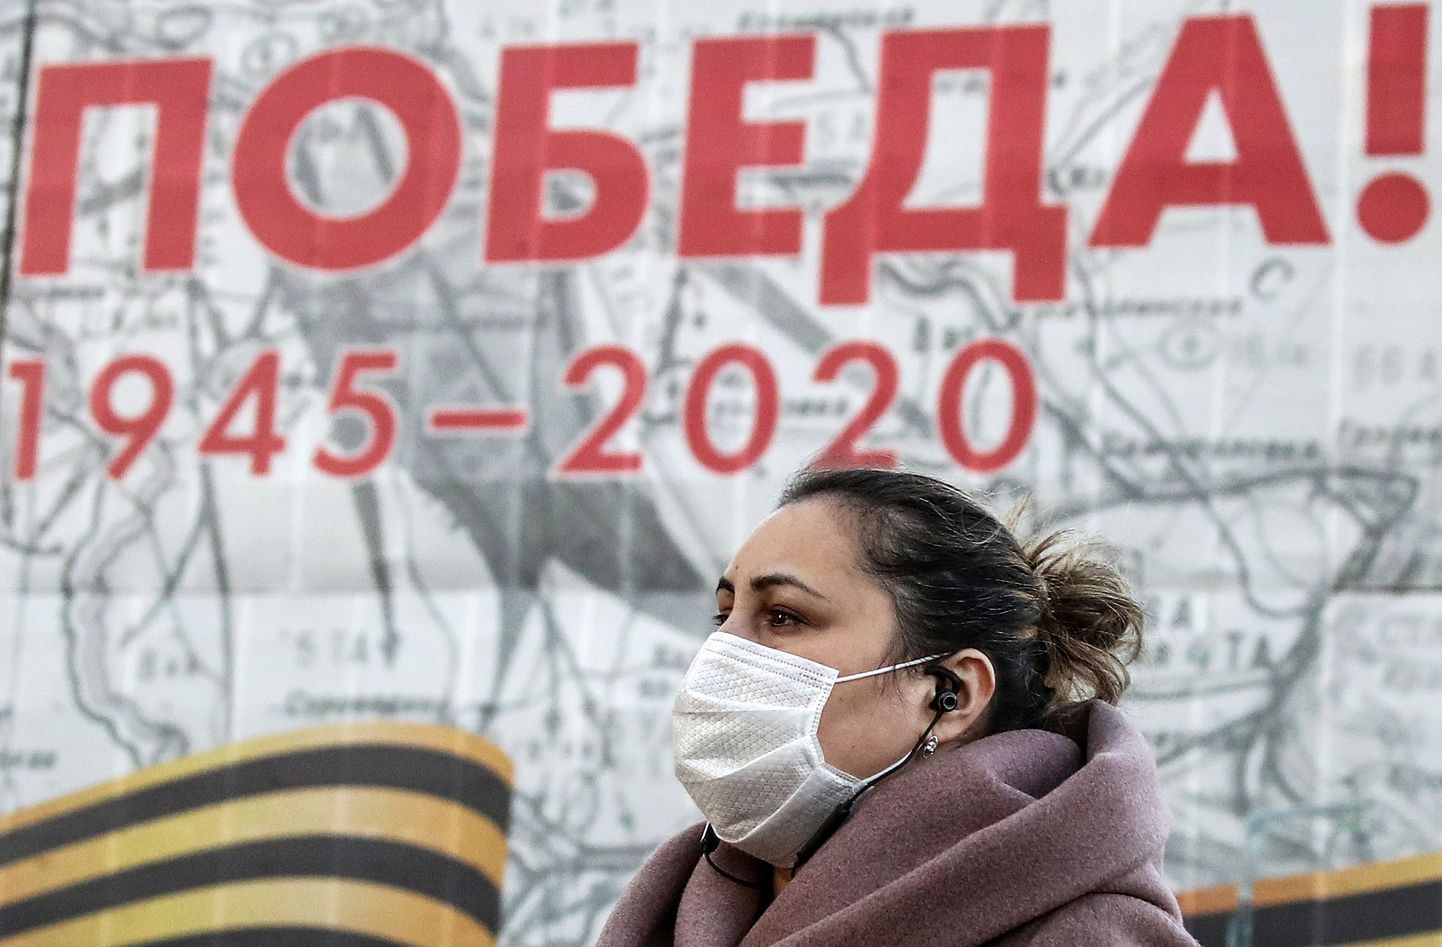 Näomaskiga naine võidupüha lähenemist kuulutava plakati taustal Moskvas.